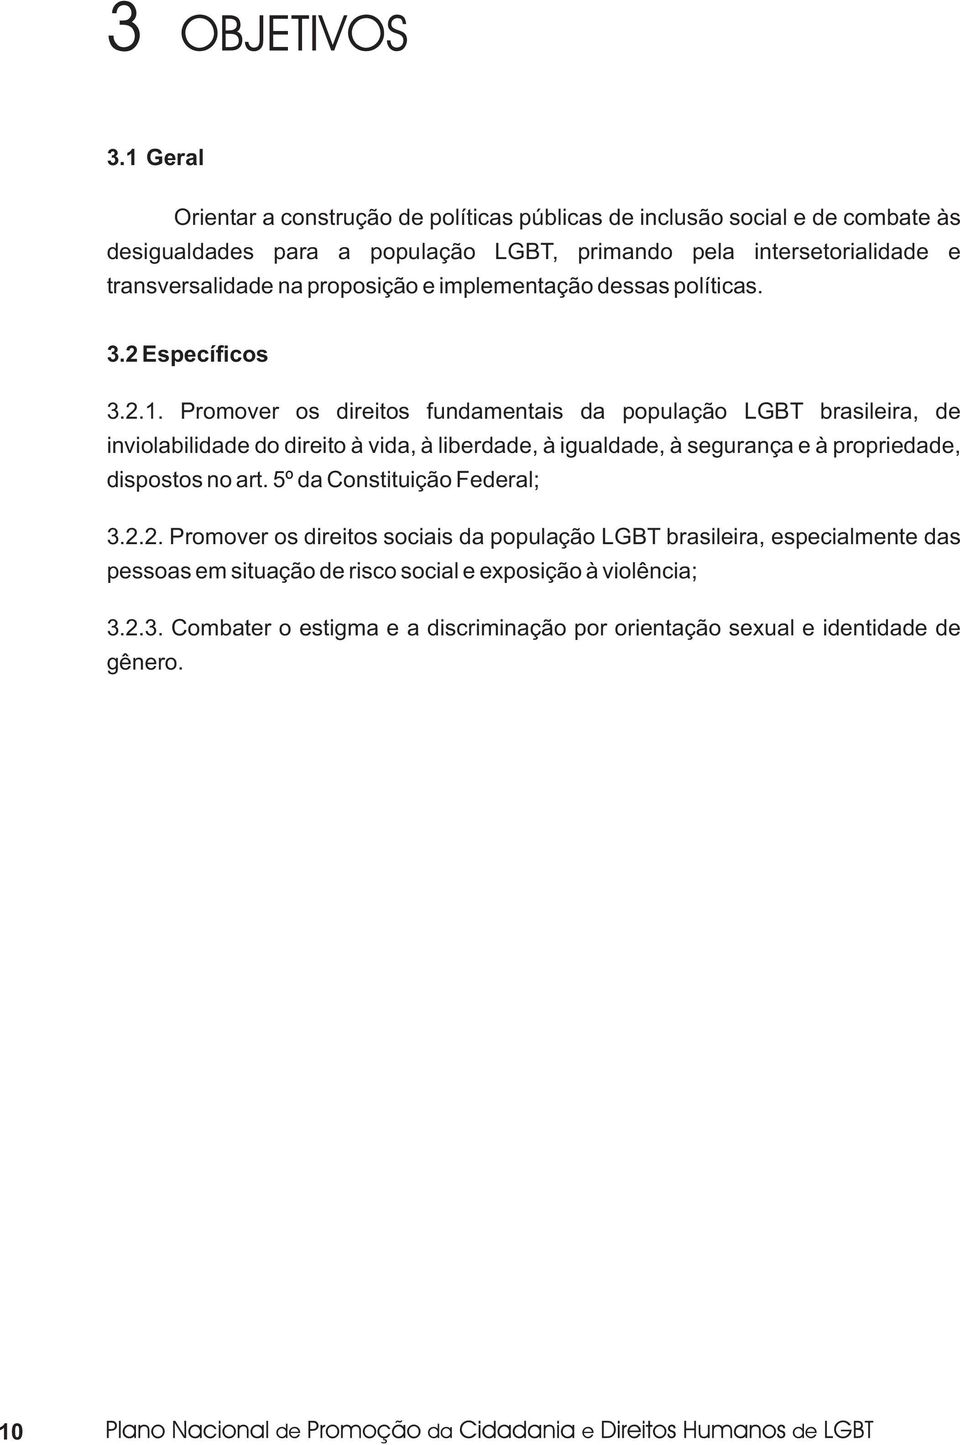 Promover os direitos fundamentais da população LGBT brasileira, de inviolabilidade do direito à vida, à liberdade, à igualdade, à segurança e à propriedade, dispostos no